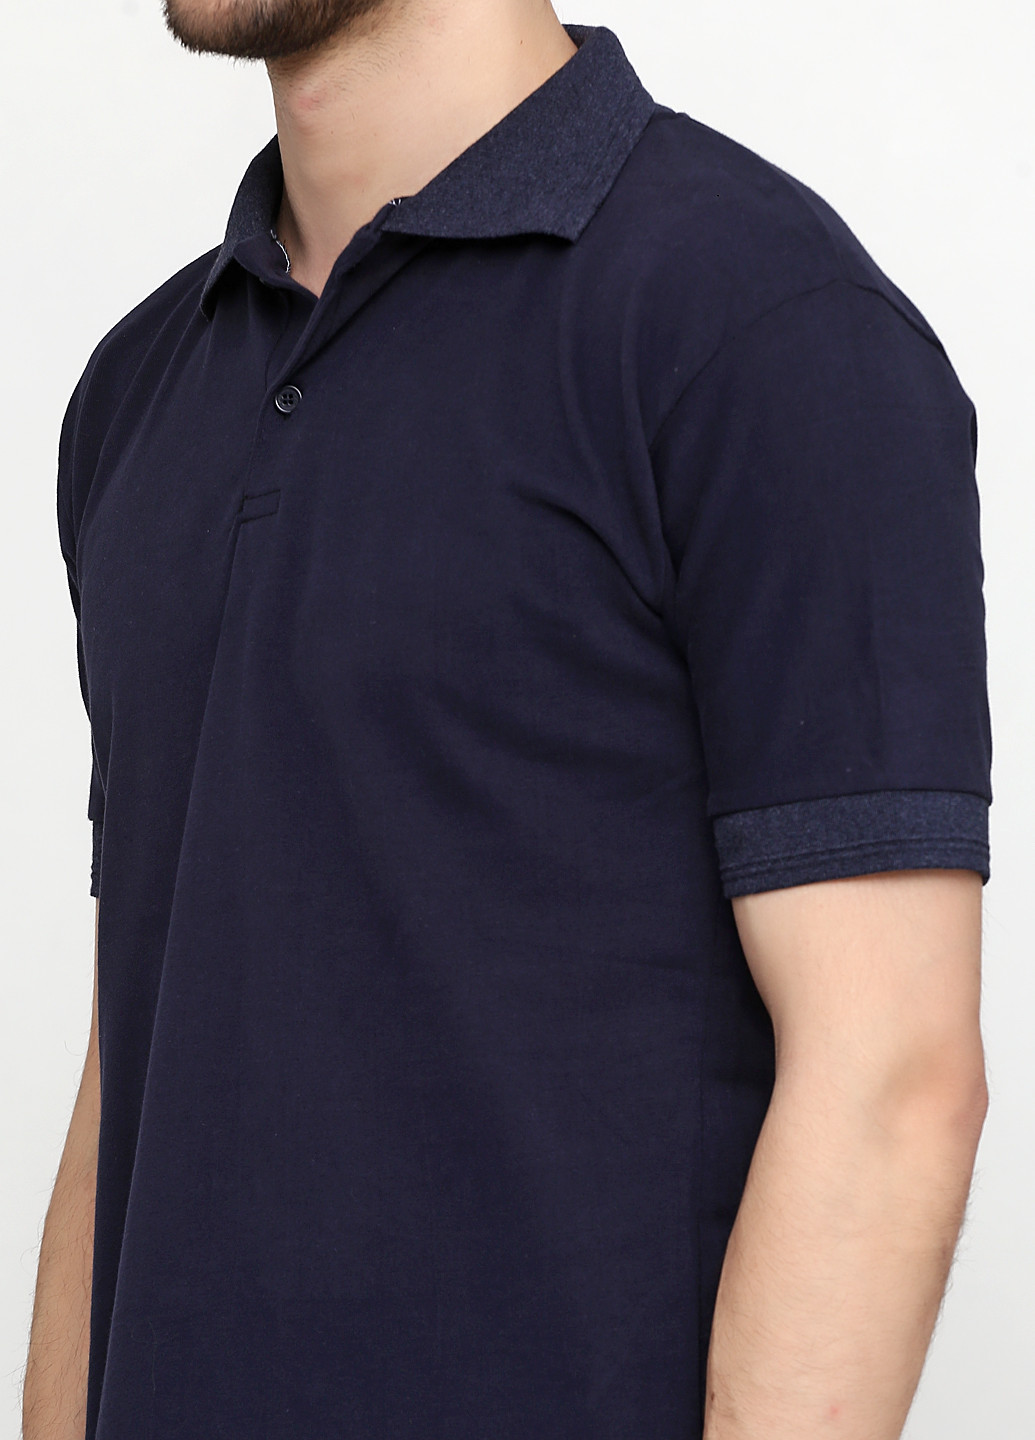 Темно-синяя футболка-поло для мужчин Chiarotex однотонная